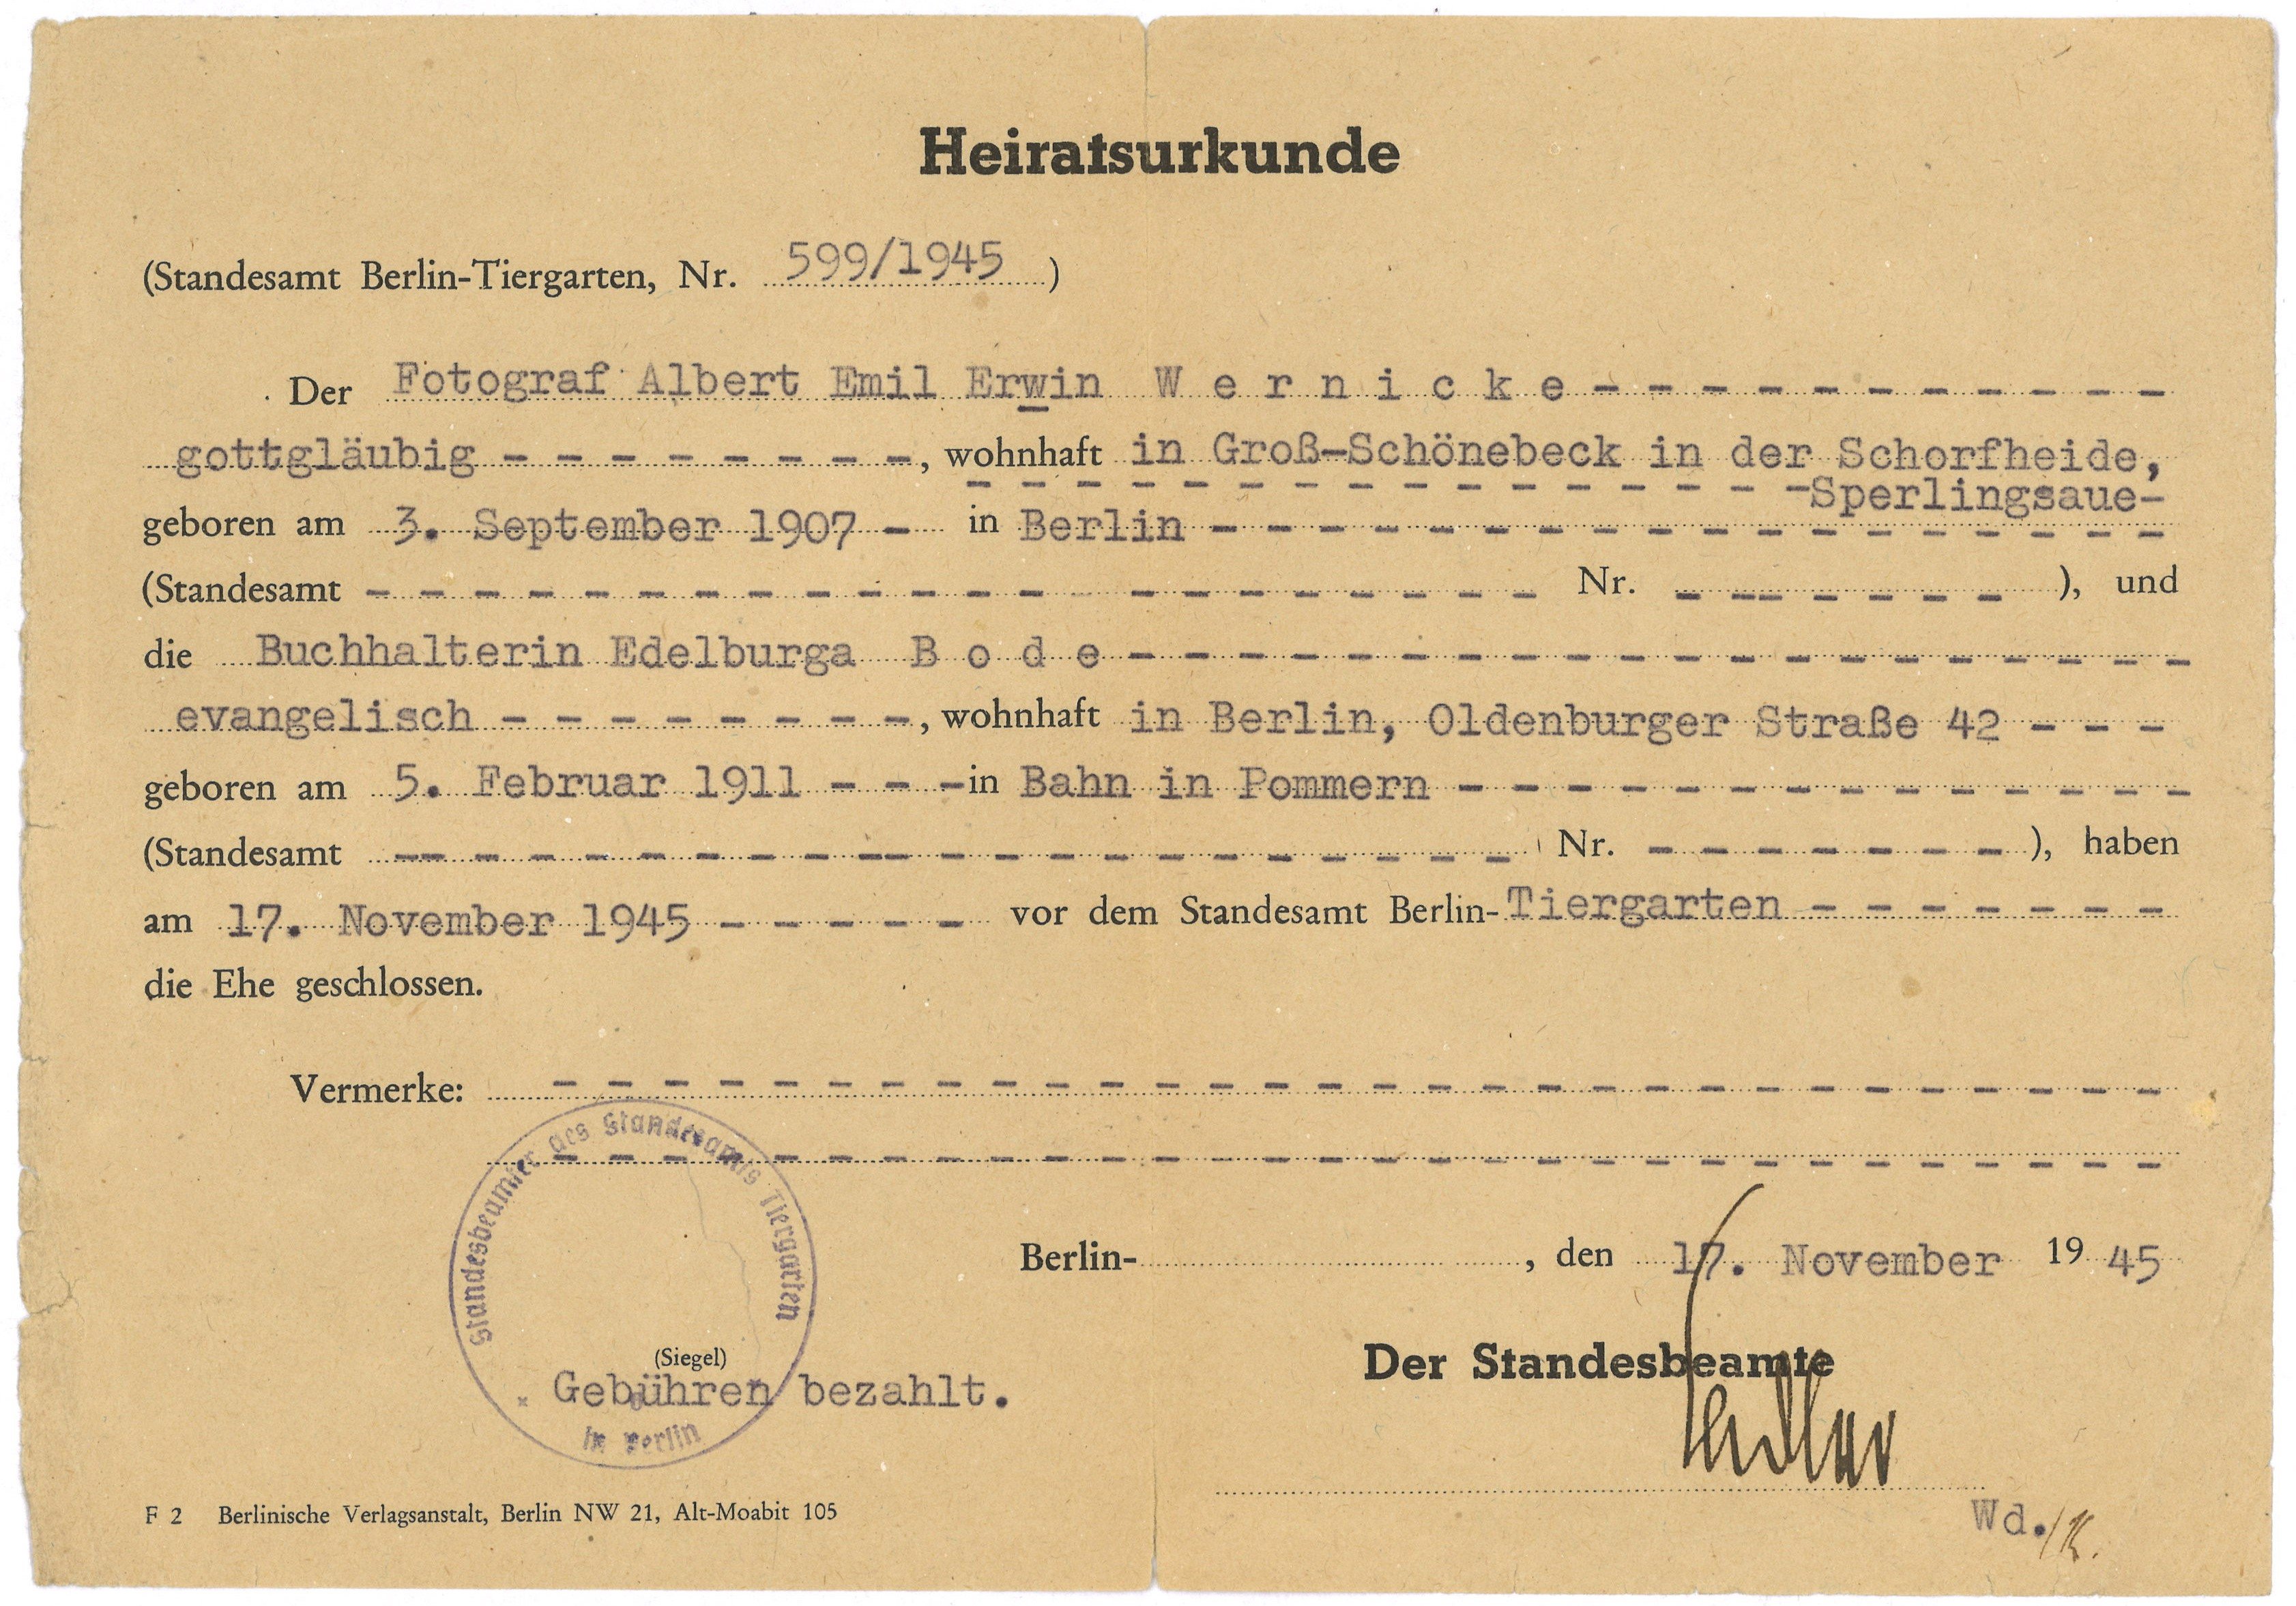 Heiratsurkunde Fotograf Erwin Wernicke und Buchhalterin Edelburga Bode in Berlin 1945 (Landesgeschichtliche Vereinigung für die Mark Brandenburg e.V., Archiv CC BY)